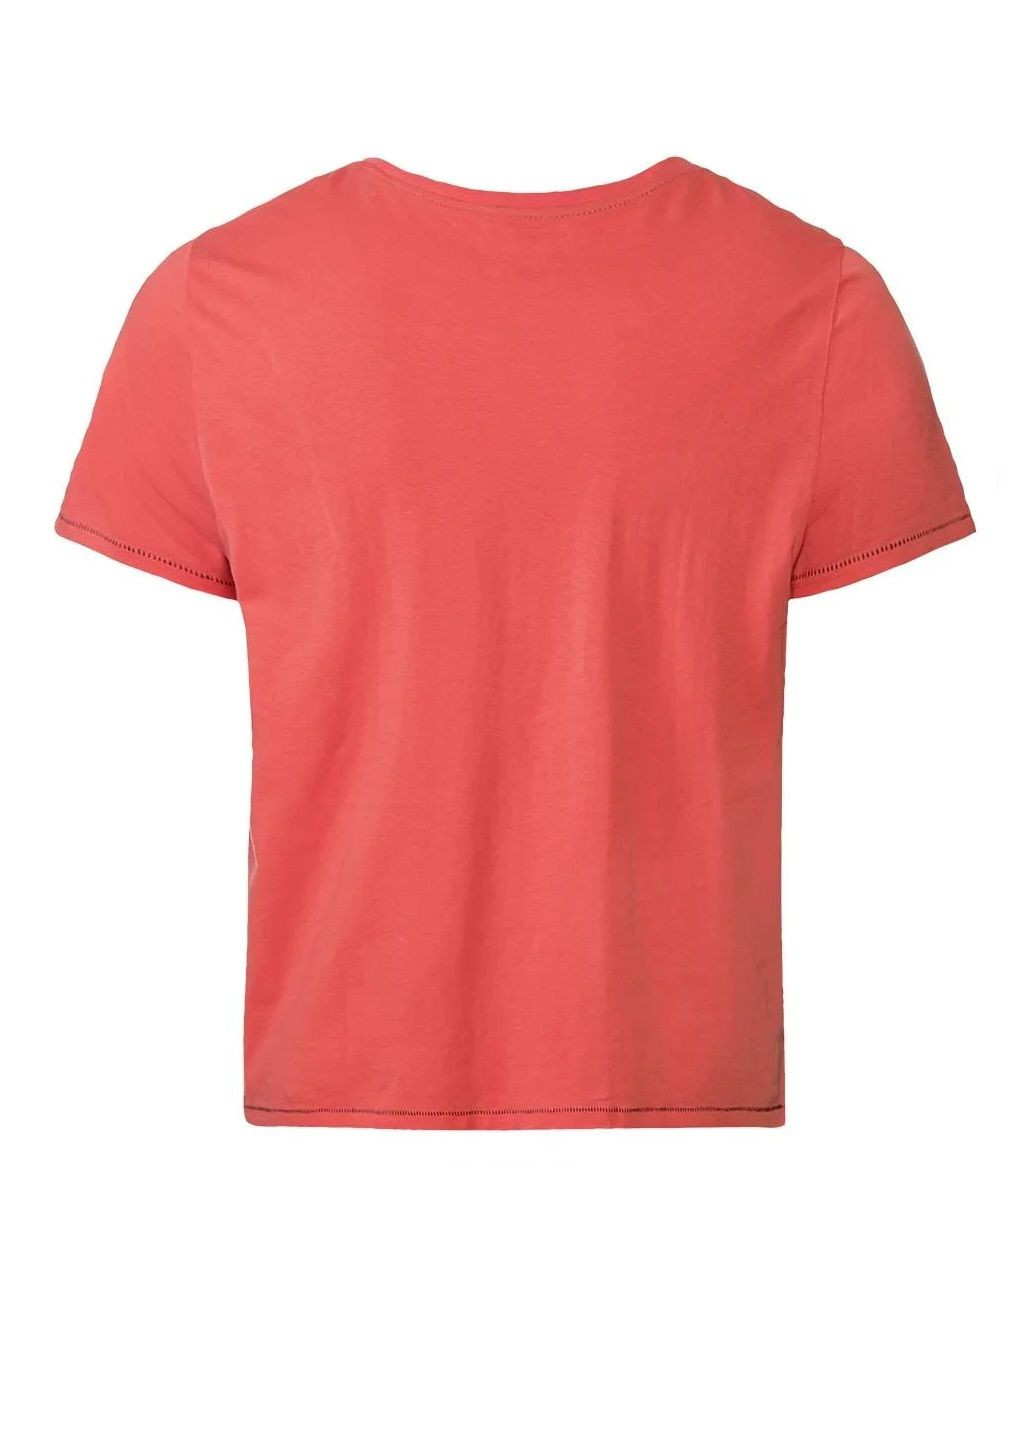 Оранжевая футболка с коротким рукавом Livergy